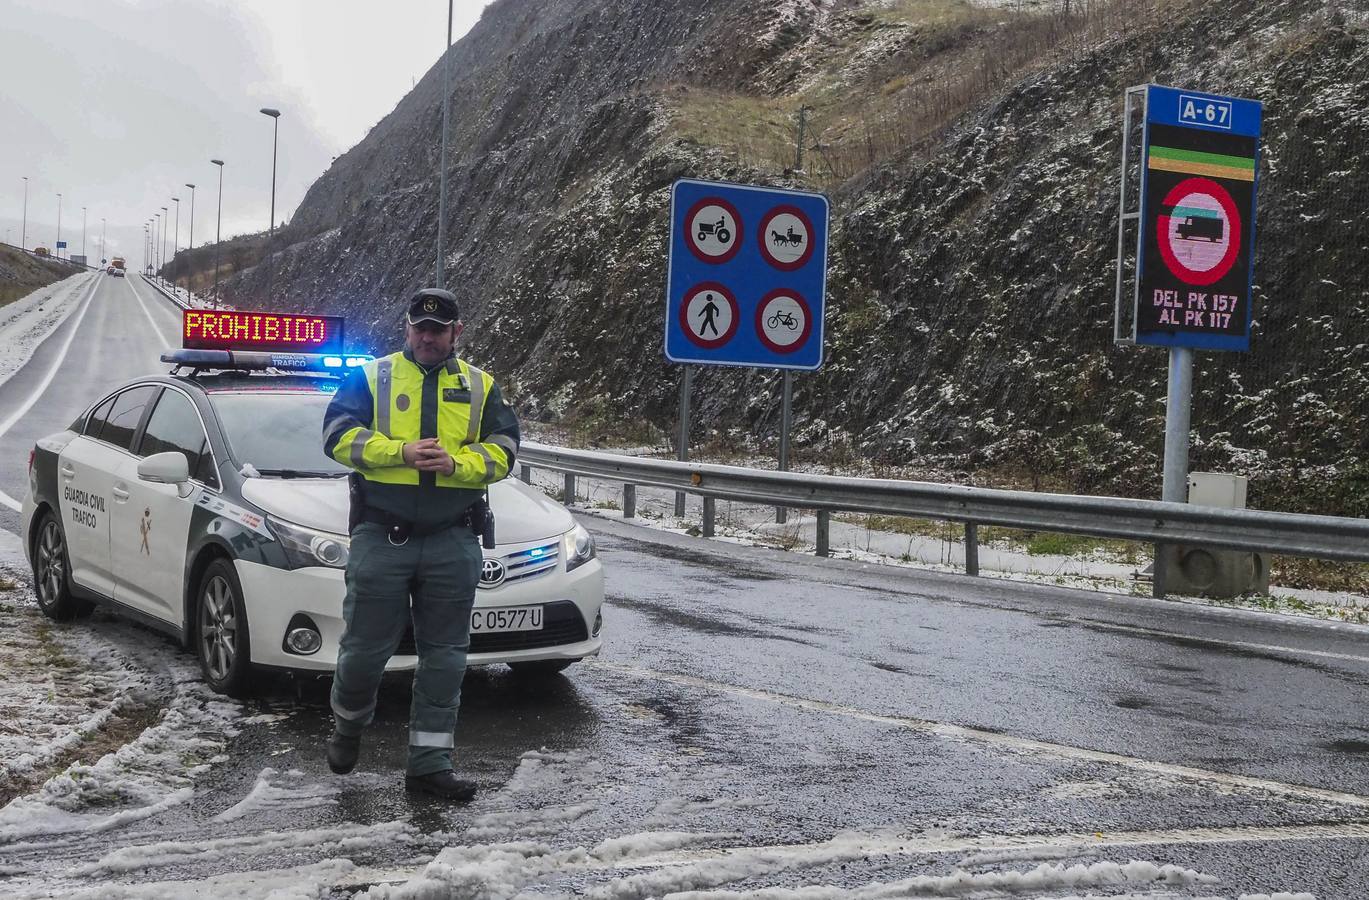 La Guardia Civil ha estado controlando el tráfico en diferentes puntos por los que no era posible circular